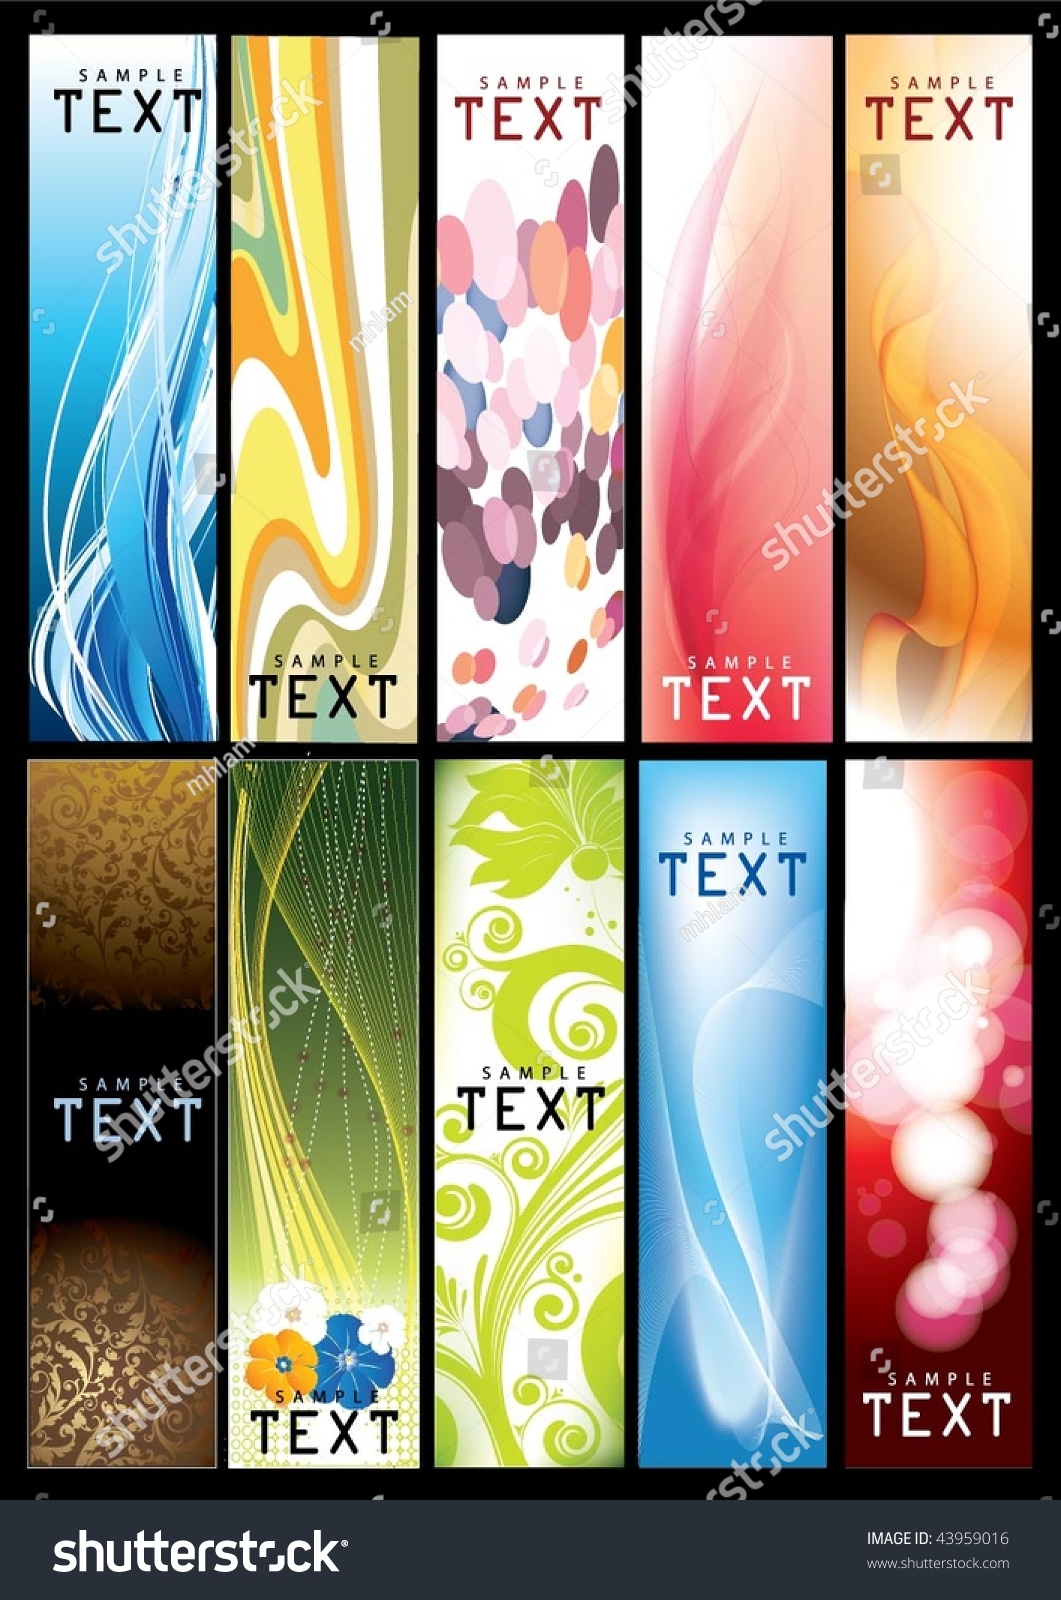 Vertical Banner Template Stock Vector Illustration 43959016 : Shutterstock